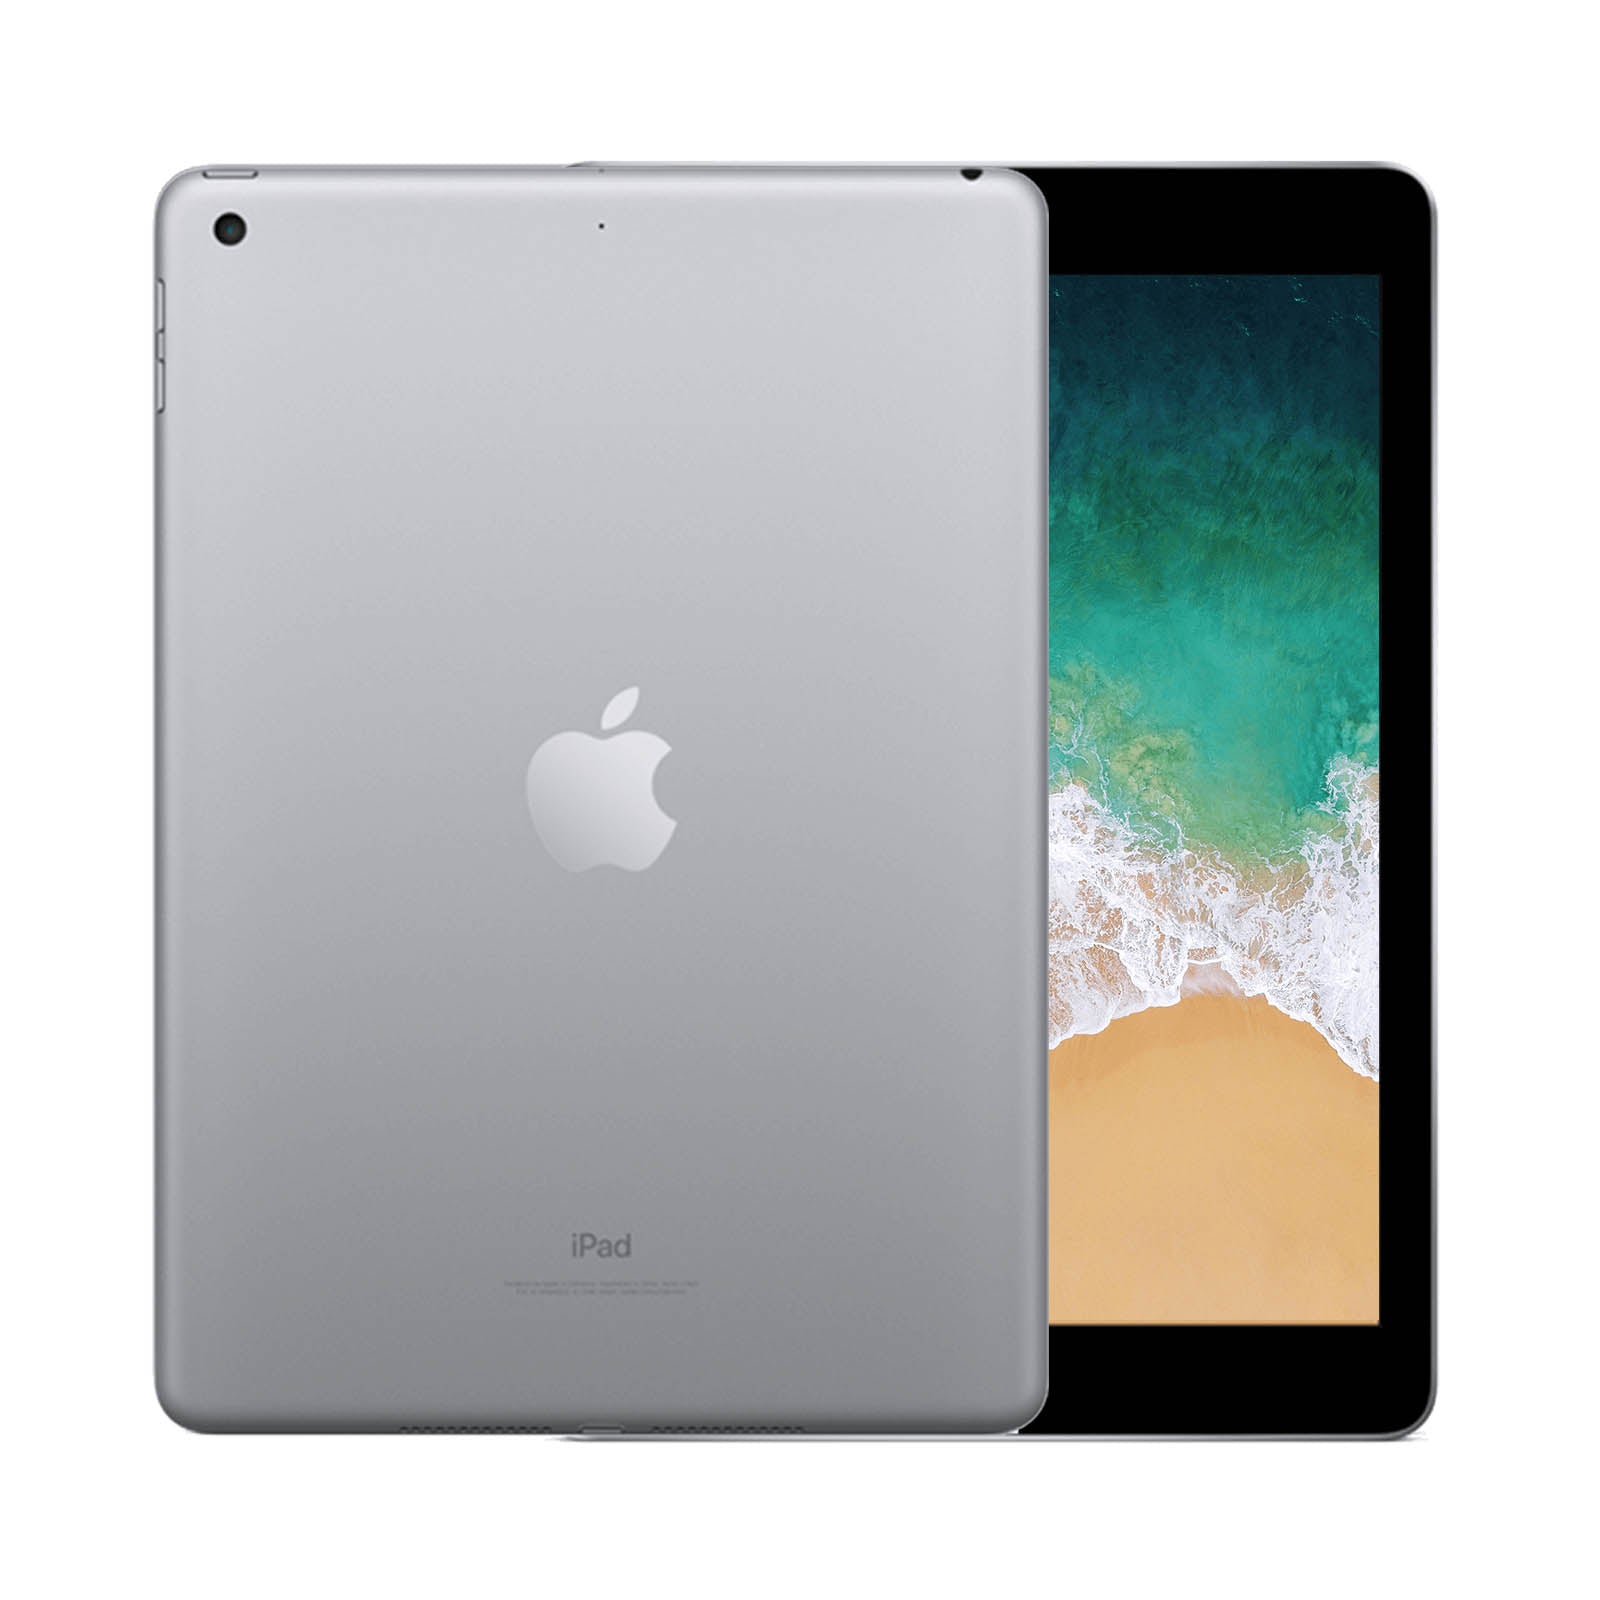 Apple iPad 5 128GB WiFi Space Grey - Good 128GB Space Grey Good